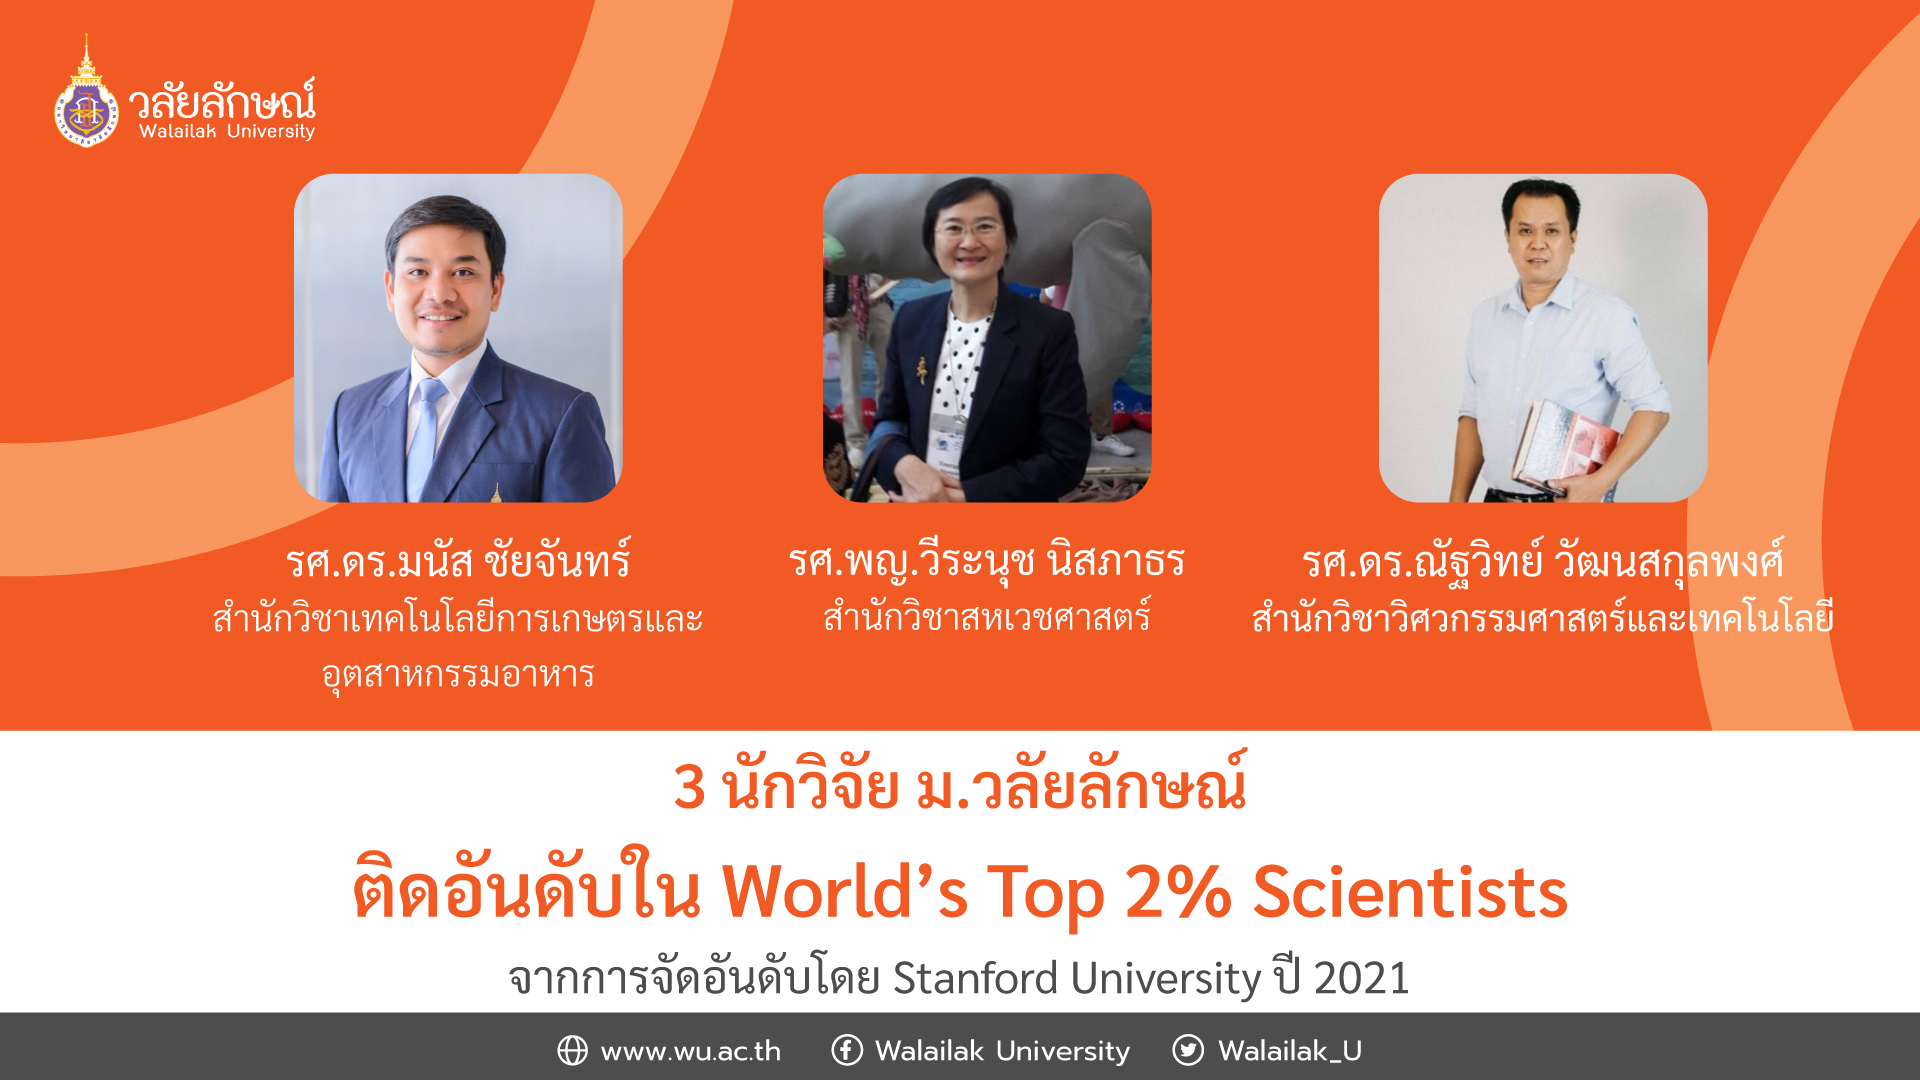 3 นักวิจัย ม.วลัยลักษณ์ ติดอันดับใน World’s Top 2% Scientists